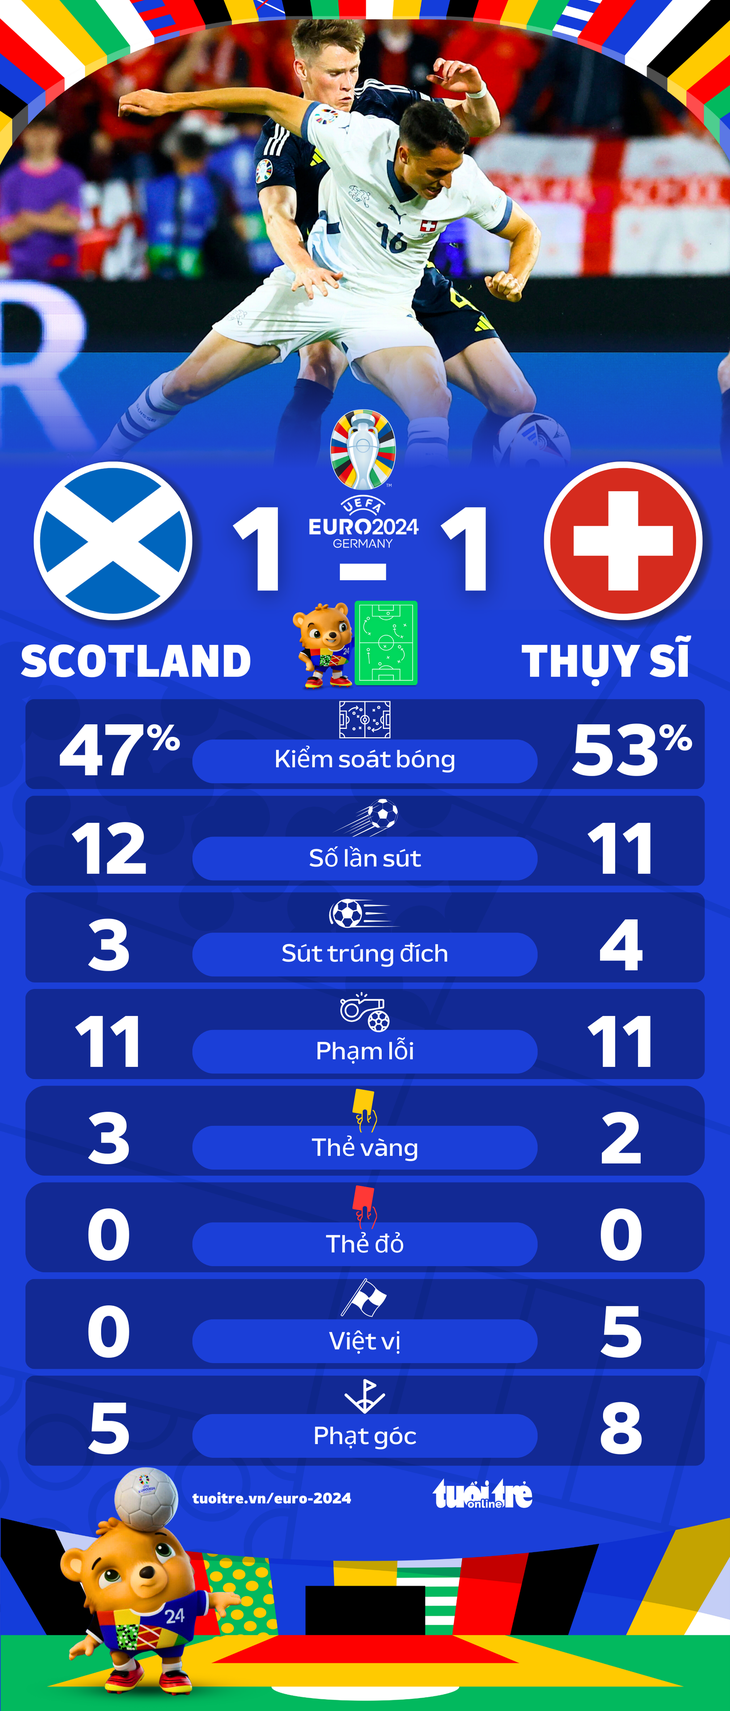 Thông số thống kê trận Thụy Sĩ hoà Scotland - Đồ họa: AN BÌNH